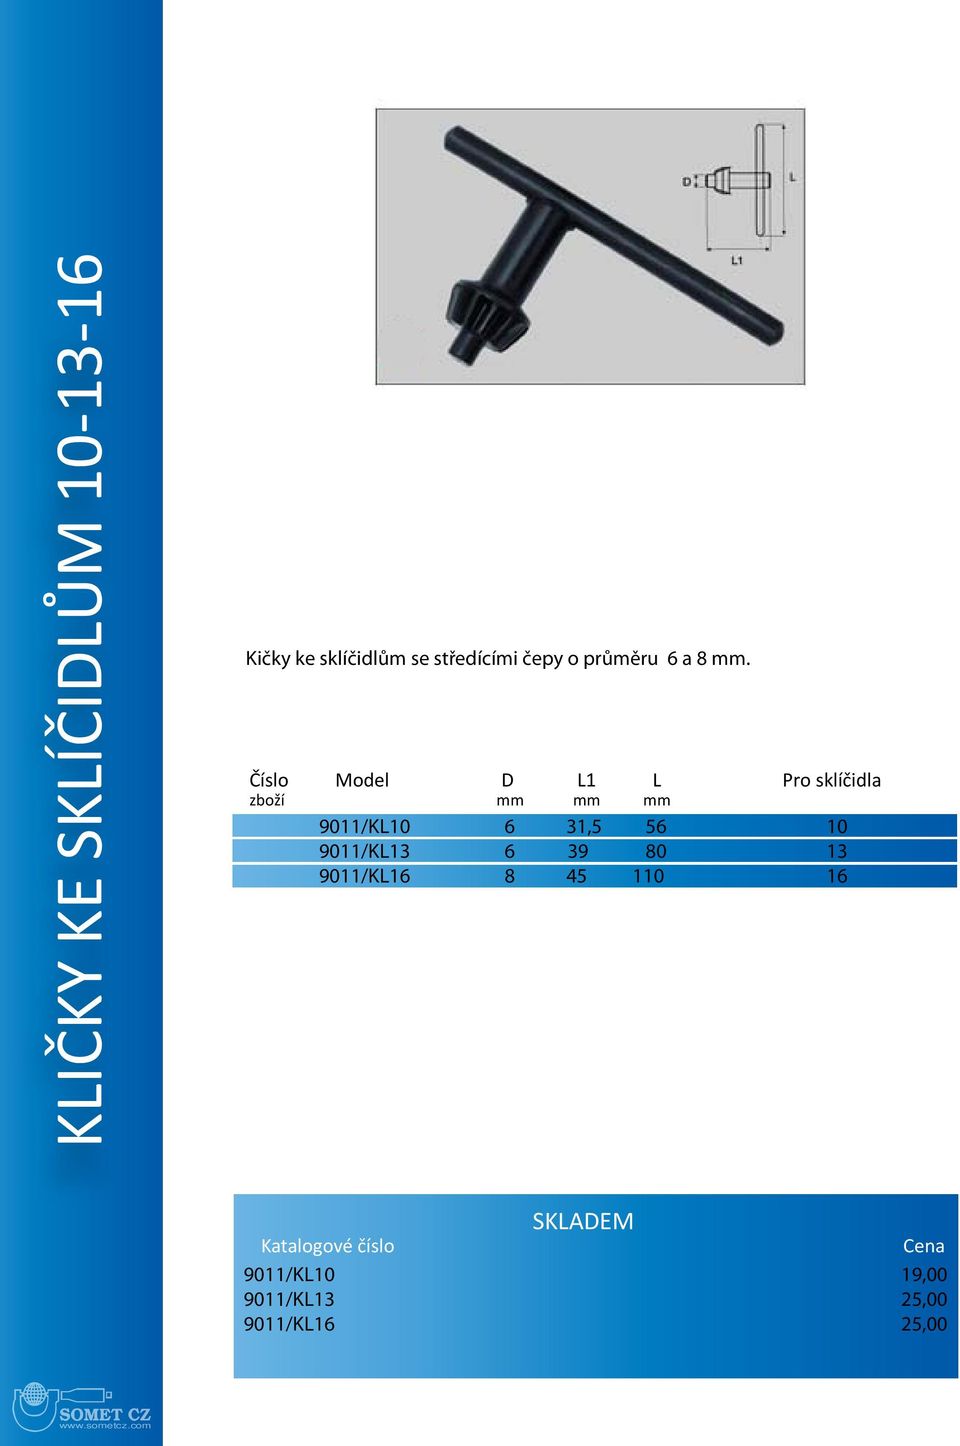 Číslo Model D L1 L Pro sklíčidla zboží mm mm mm 9011/KL10 6